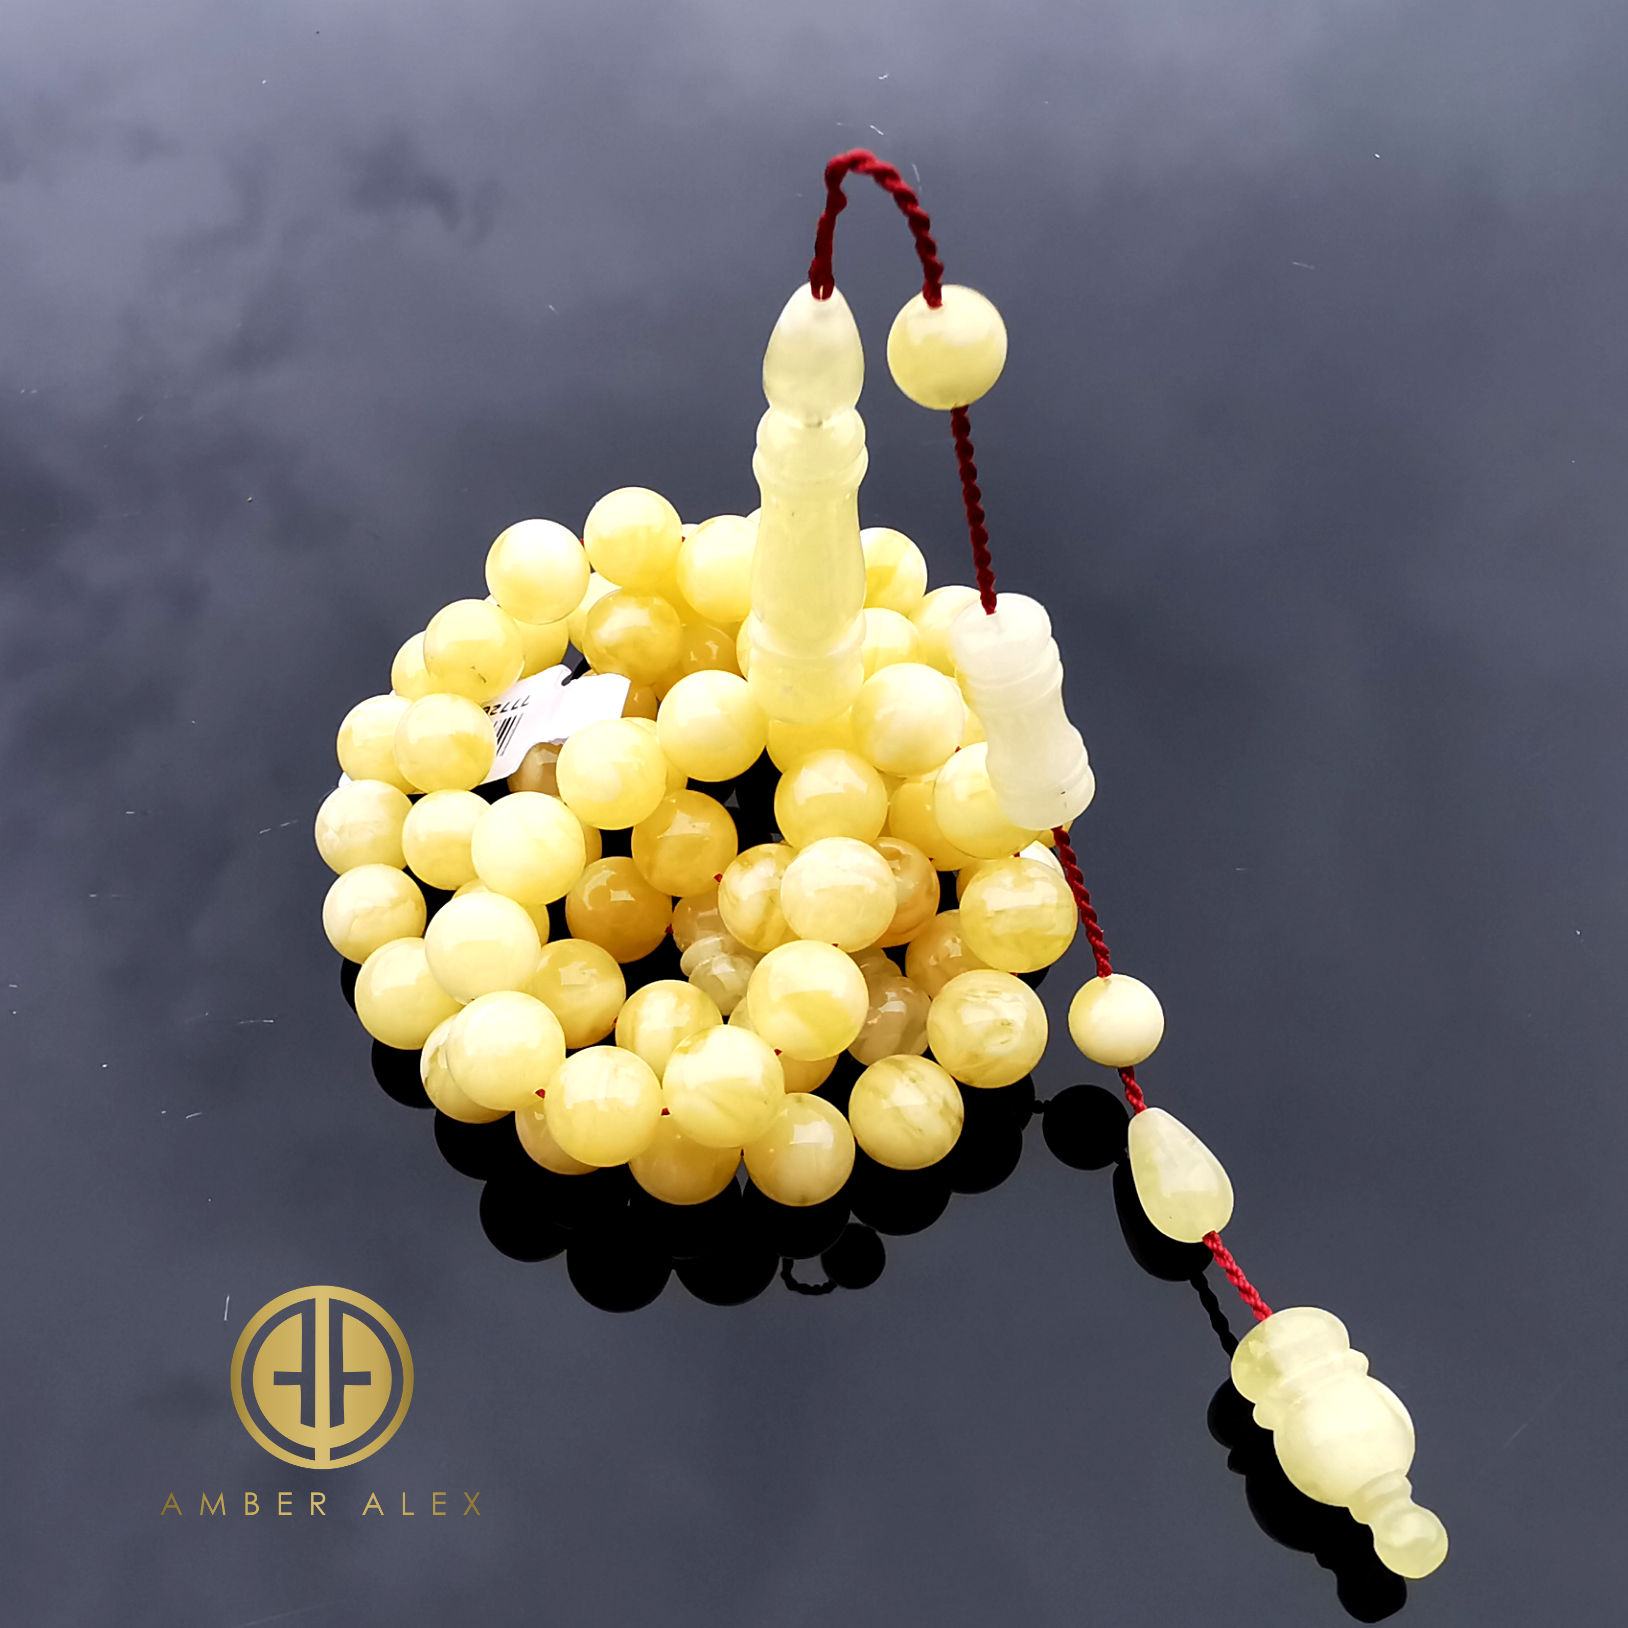 Yellow With White Amber Round Shape 8.5 mm Islamic Prayer Beads